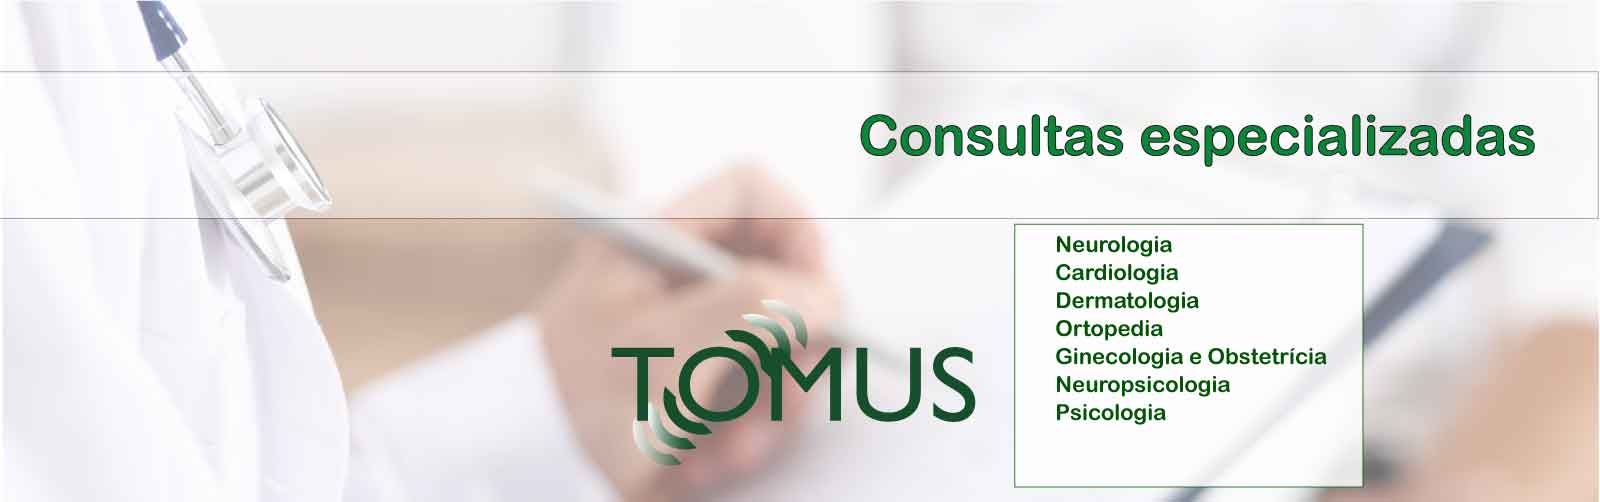 Tomus e Imagem - consultas especializadas